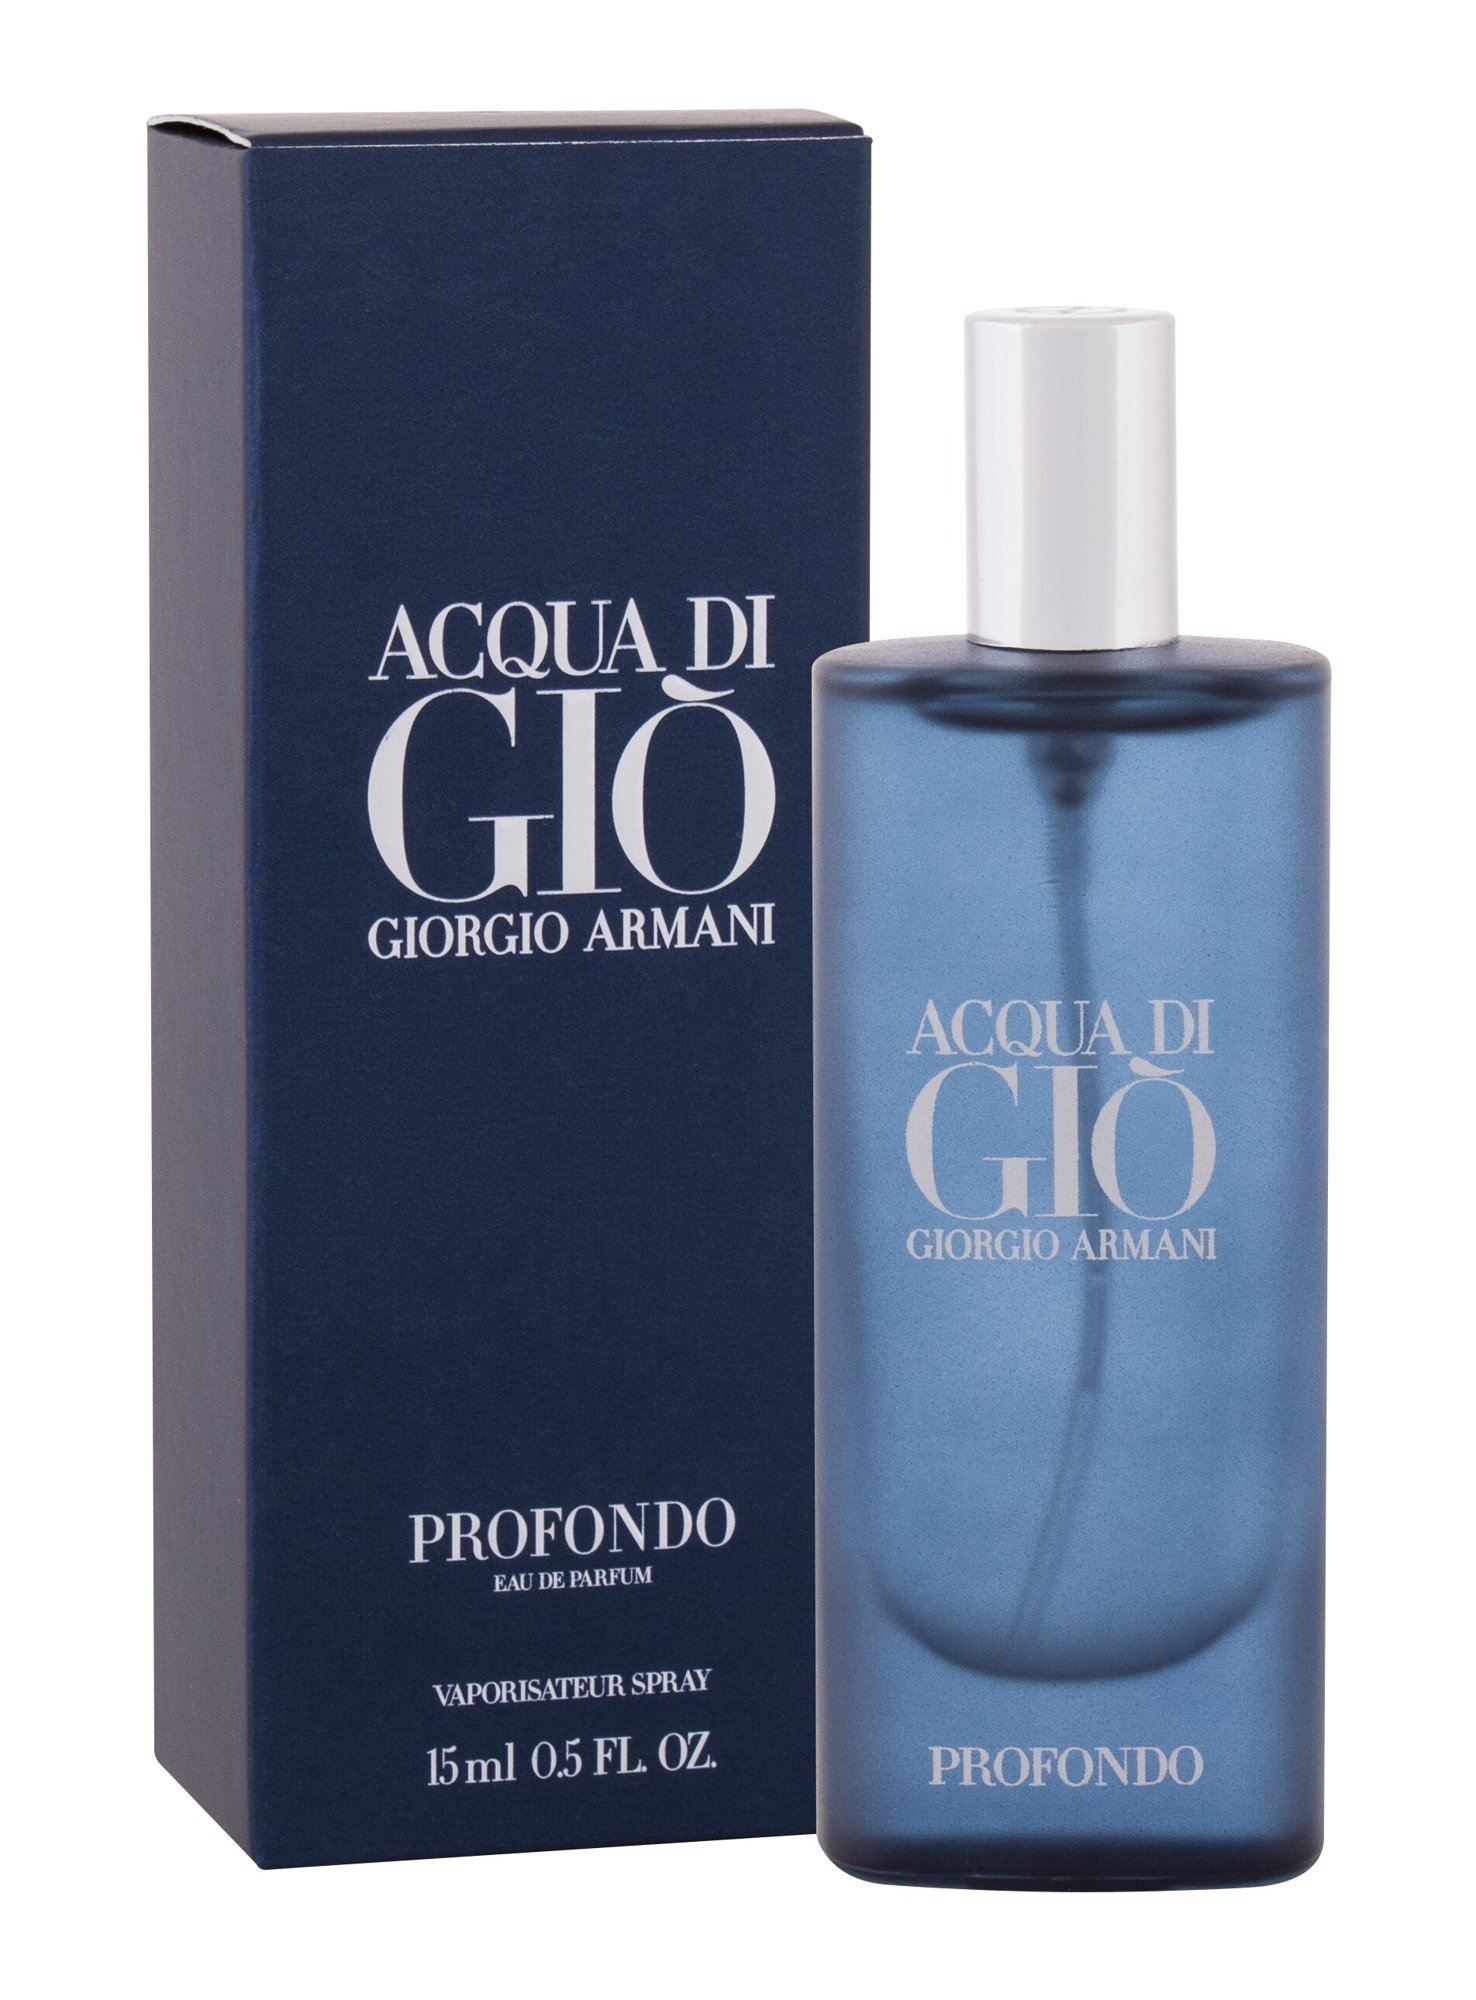 Giorgio Armani Acqua di Gio Profondo, Parfumovaná voda 15ml